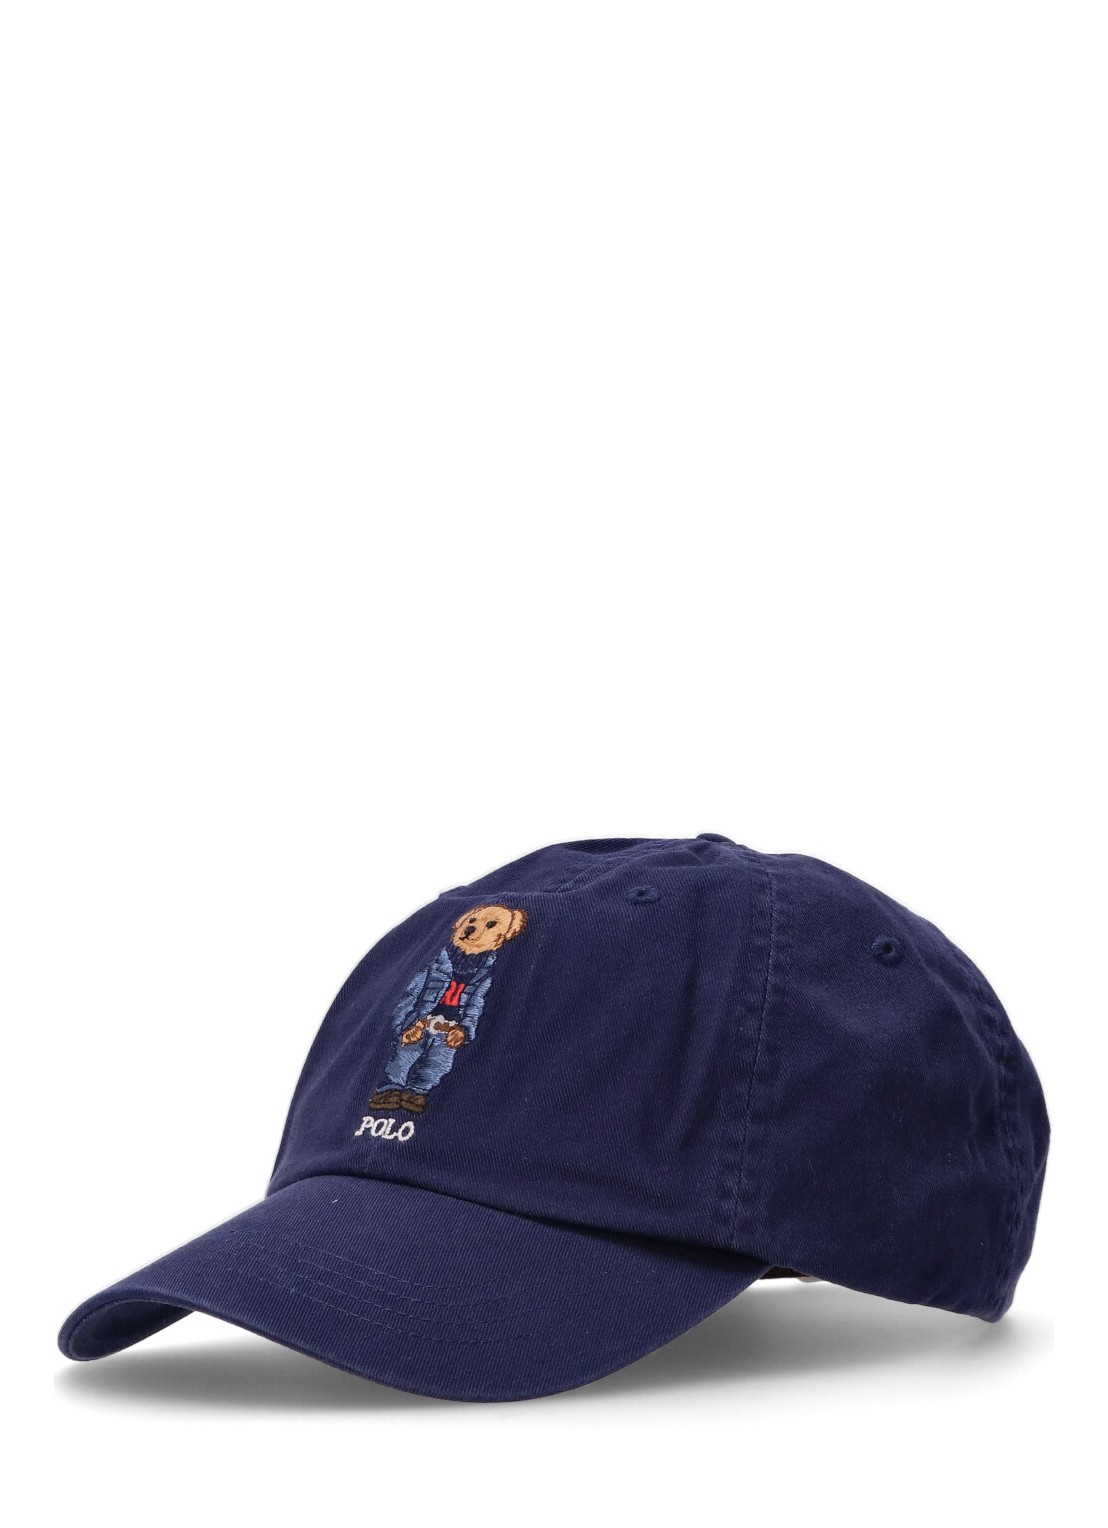 Gorras polo ralph lauren cap man cls sprt cap-cap-hat 710917437002 newport navy talla Azul
 